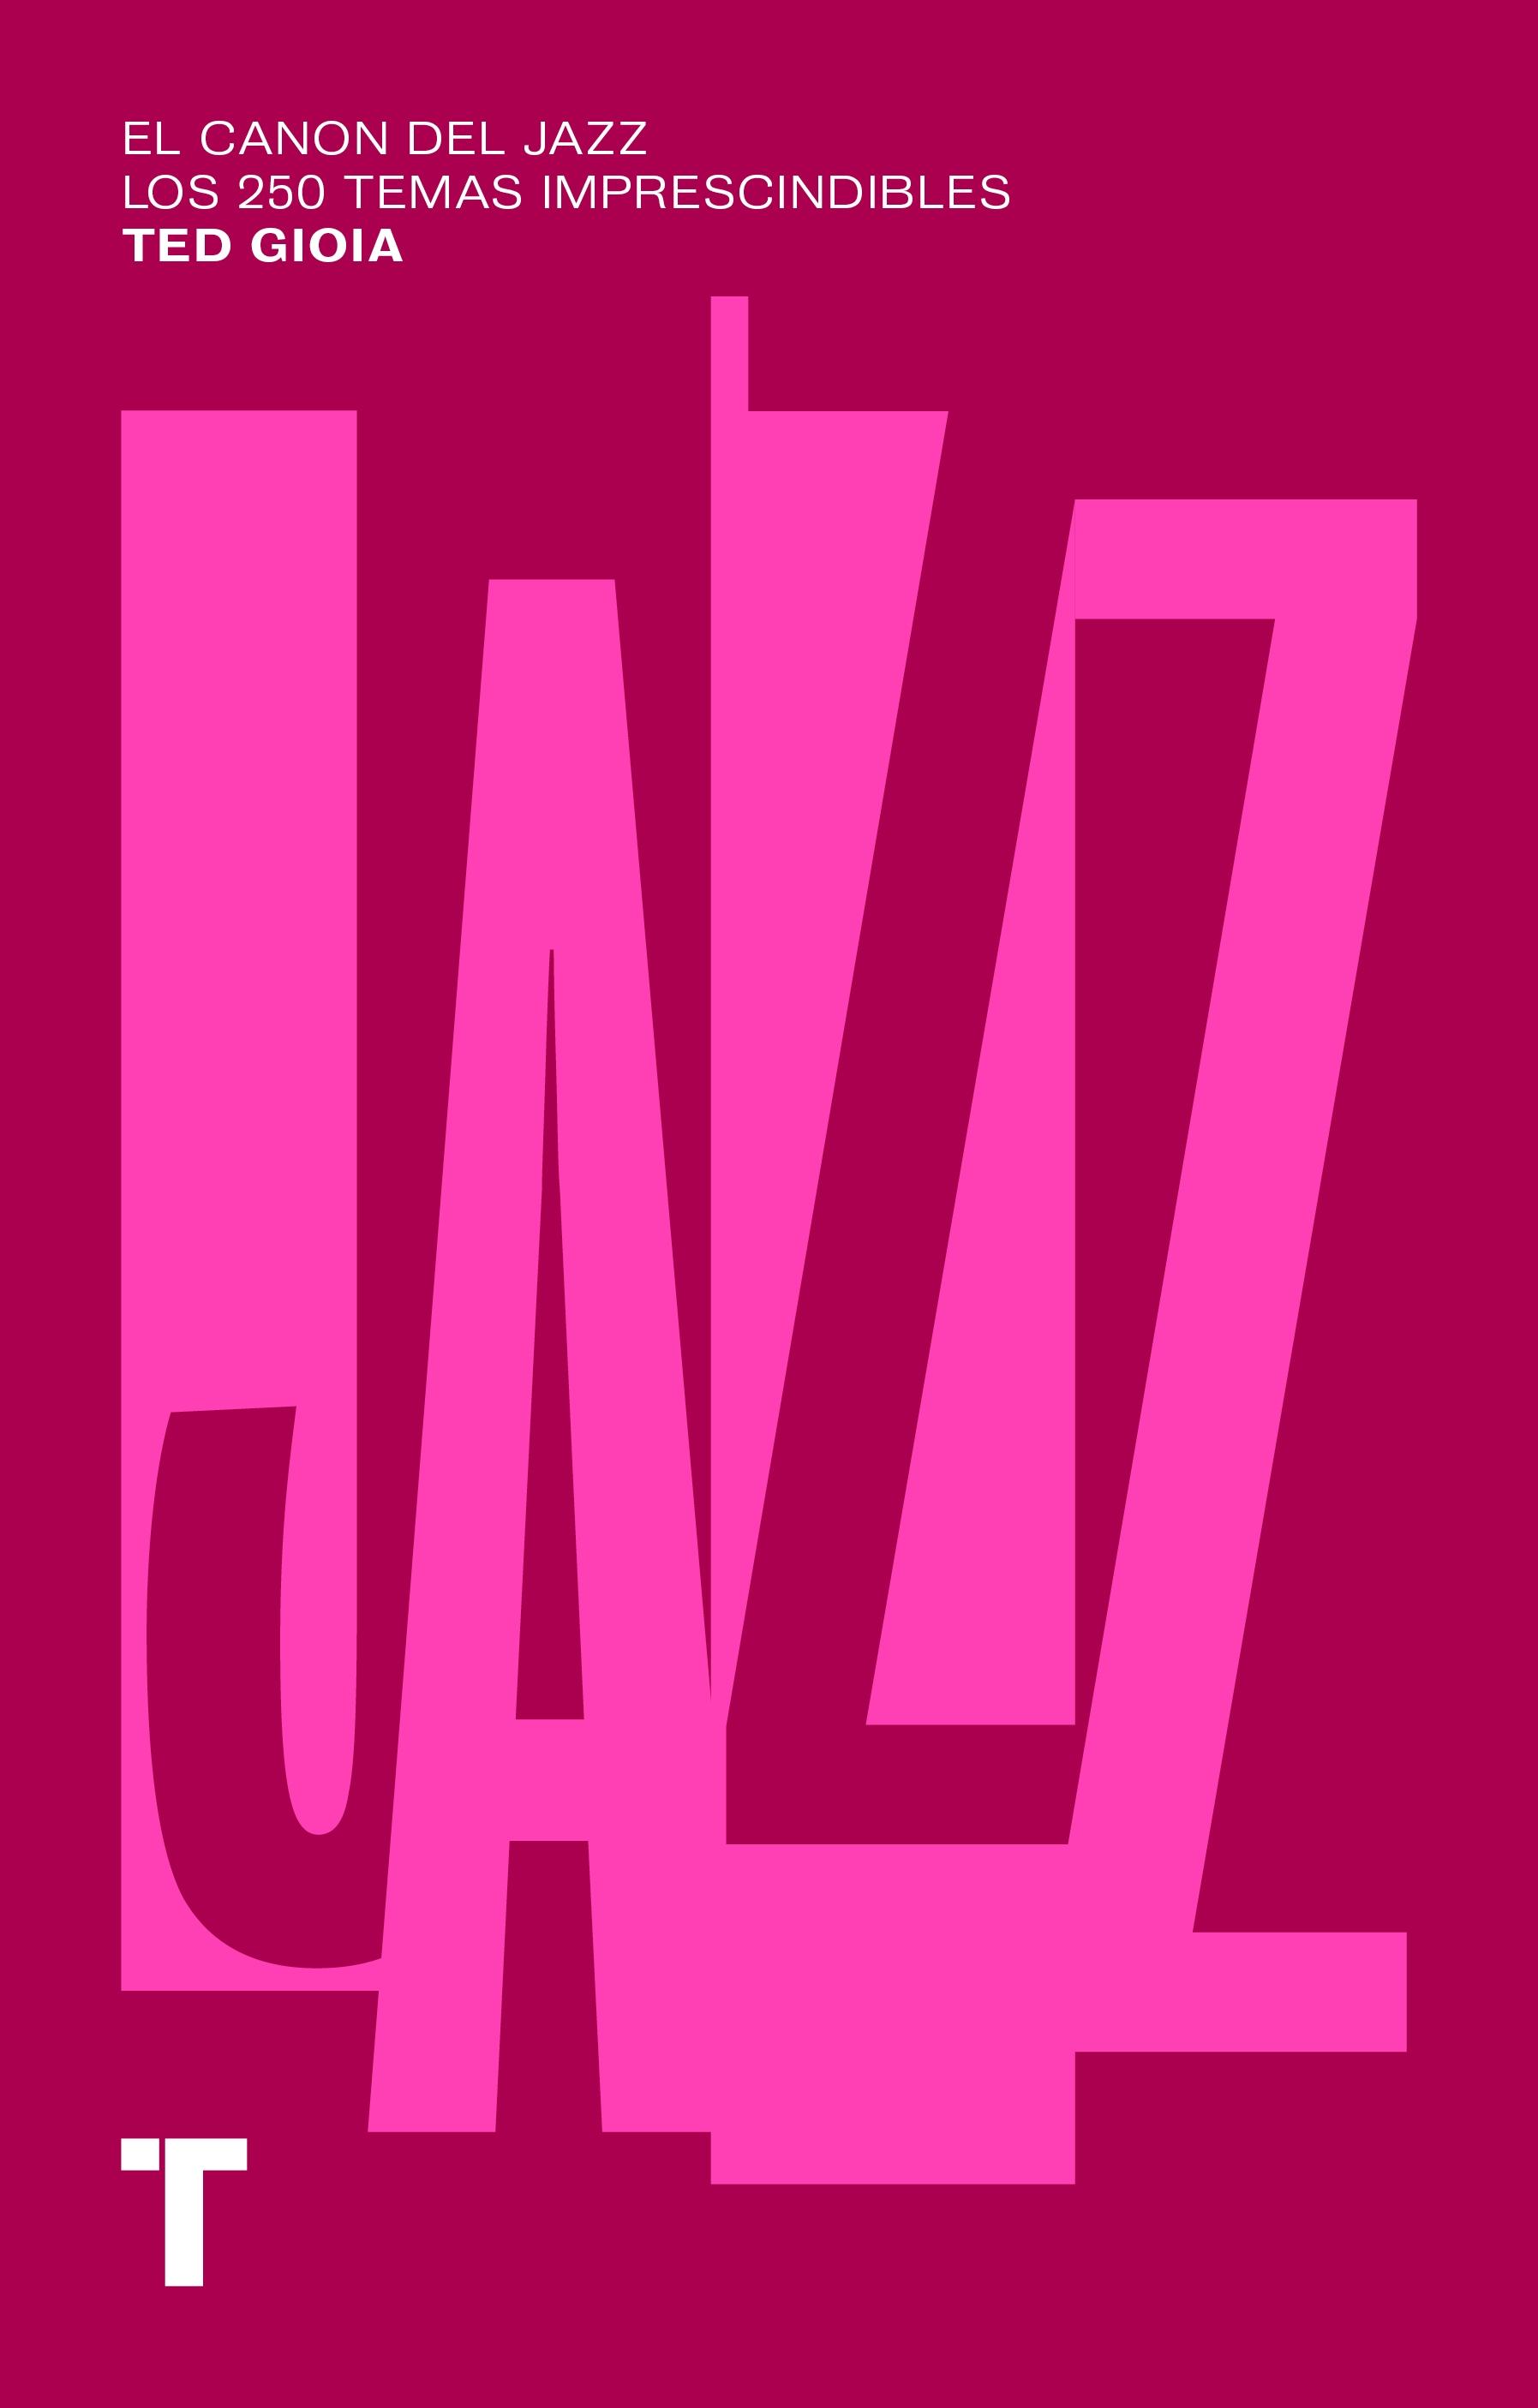 Canon del jazz, El "Los 250 temas imprescindibles"